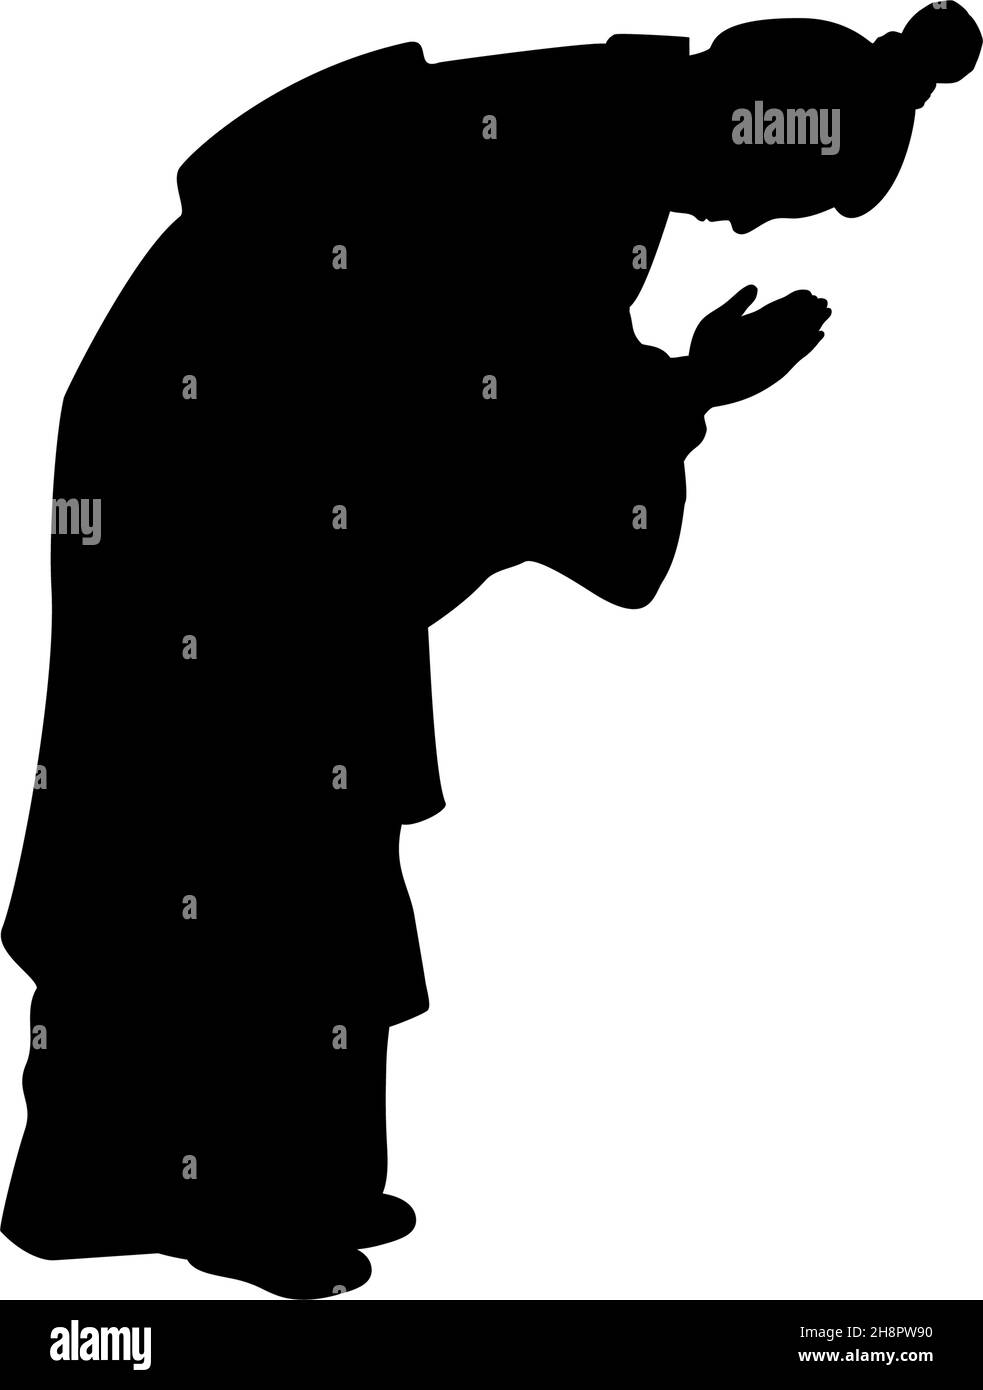 Silhouette des Mannes traditionelle Verbeugung. Ojigi japanische Etikette Geste. Stock Vektor